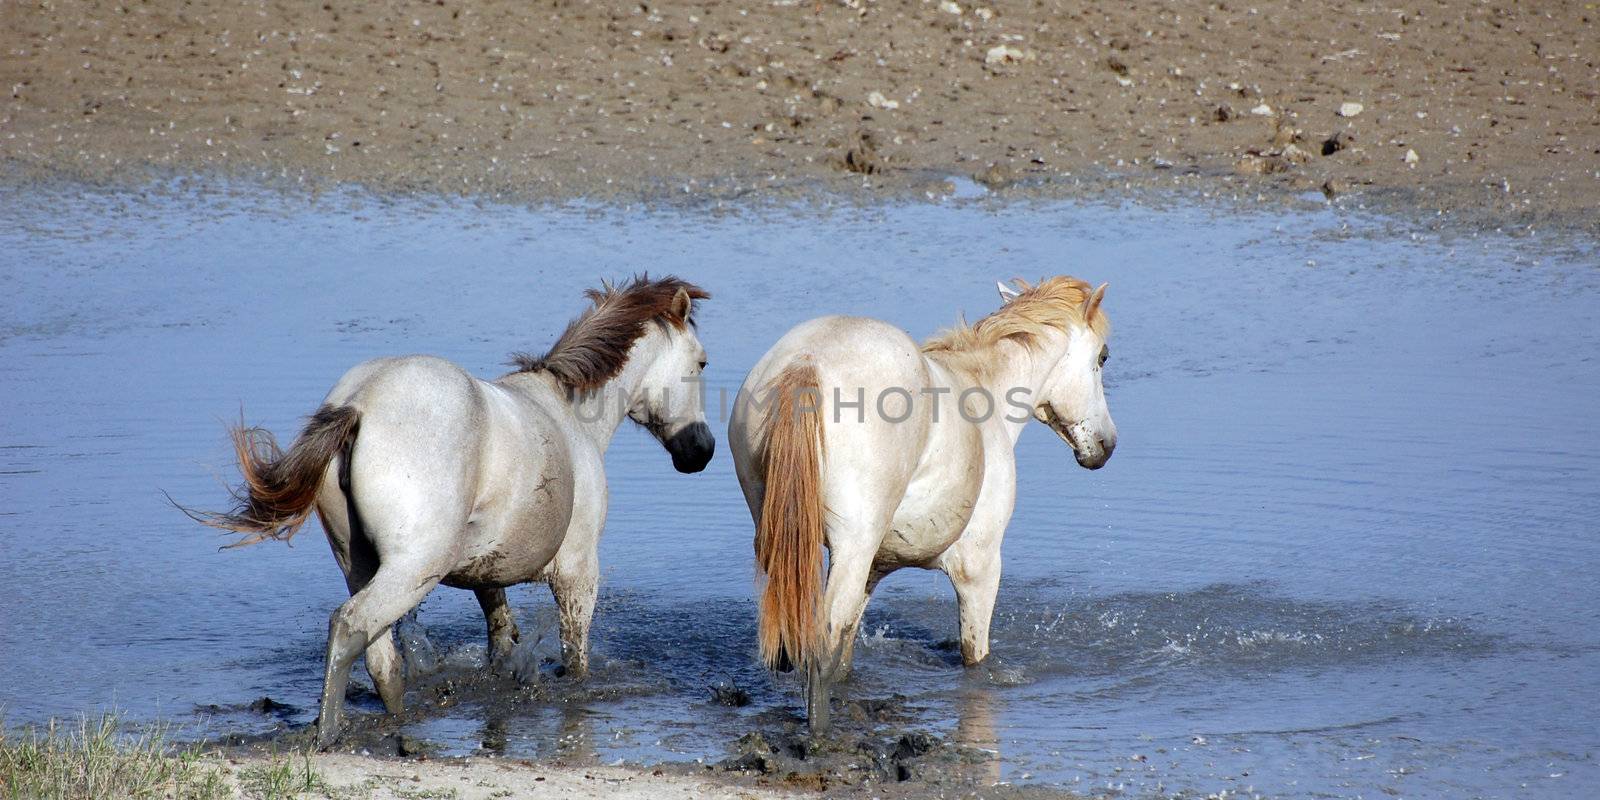 Two white horses cross little river